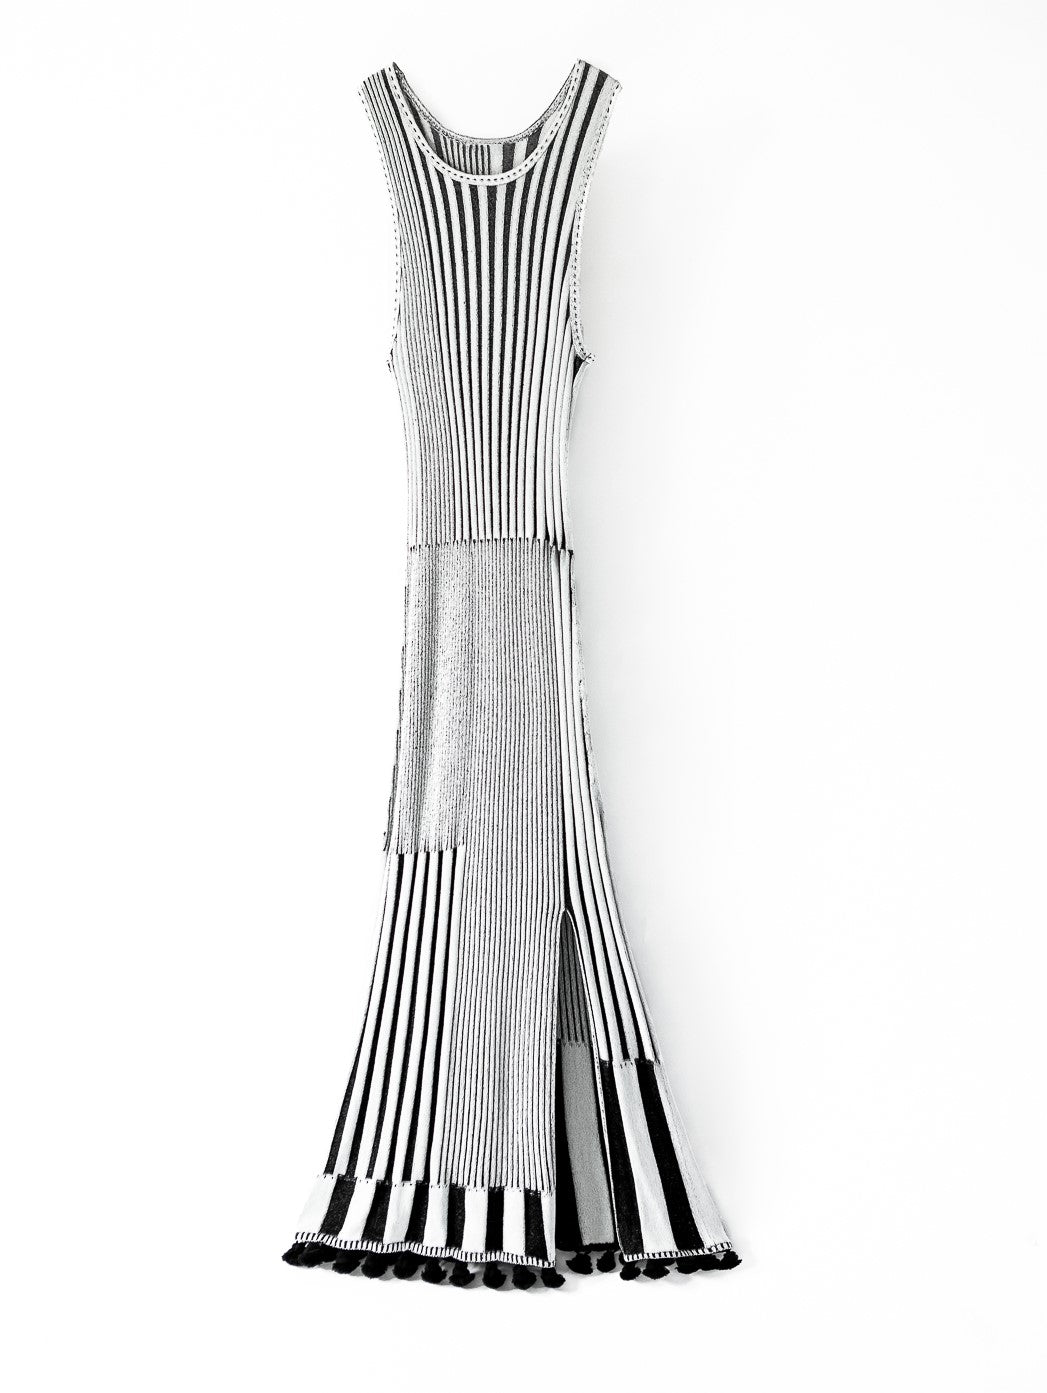 Altuzarra Striped Bandage Dress